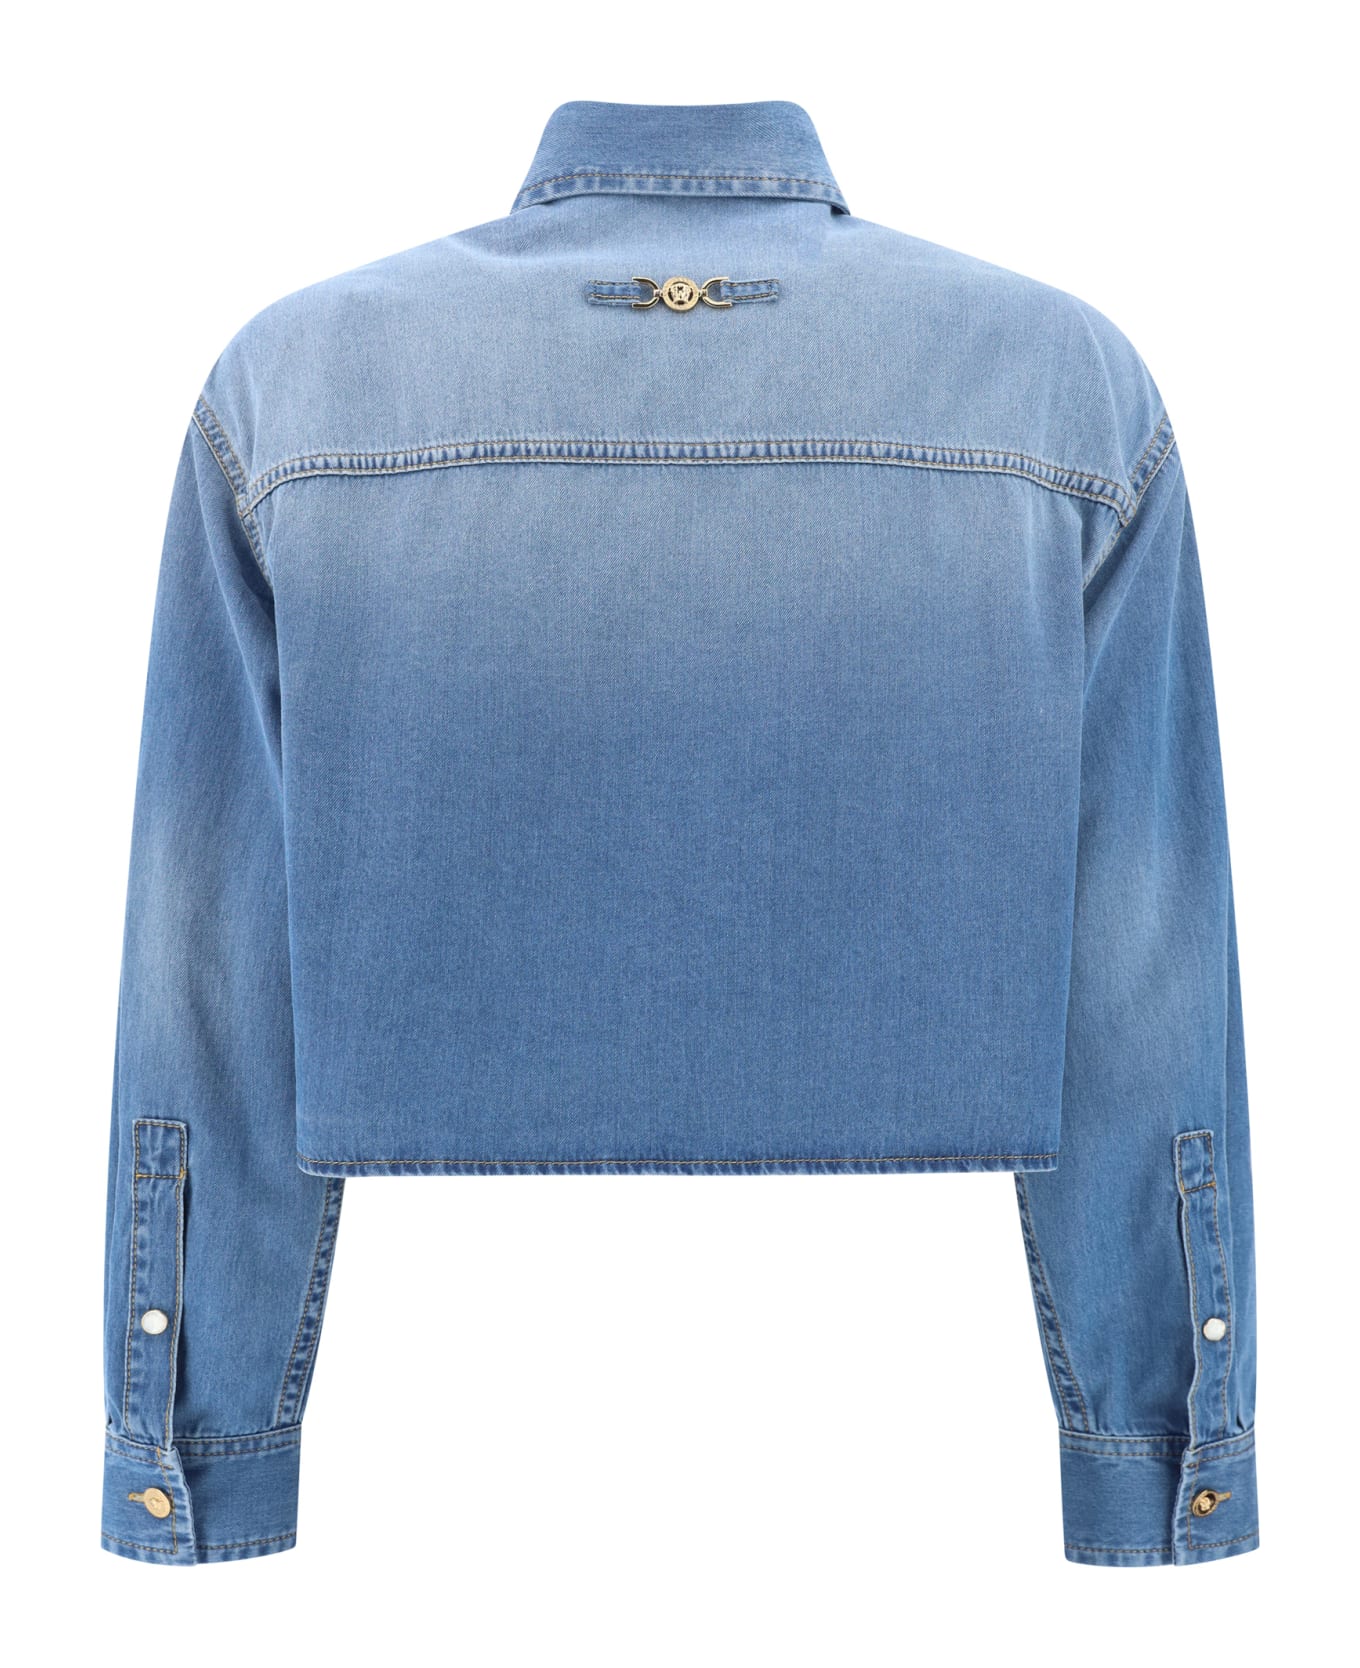 Versace Button-up Cropped Denim Shirt - Medium Blue